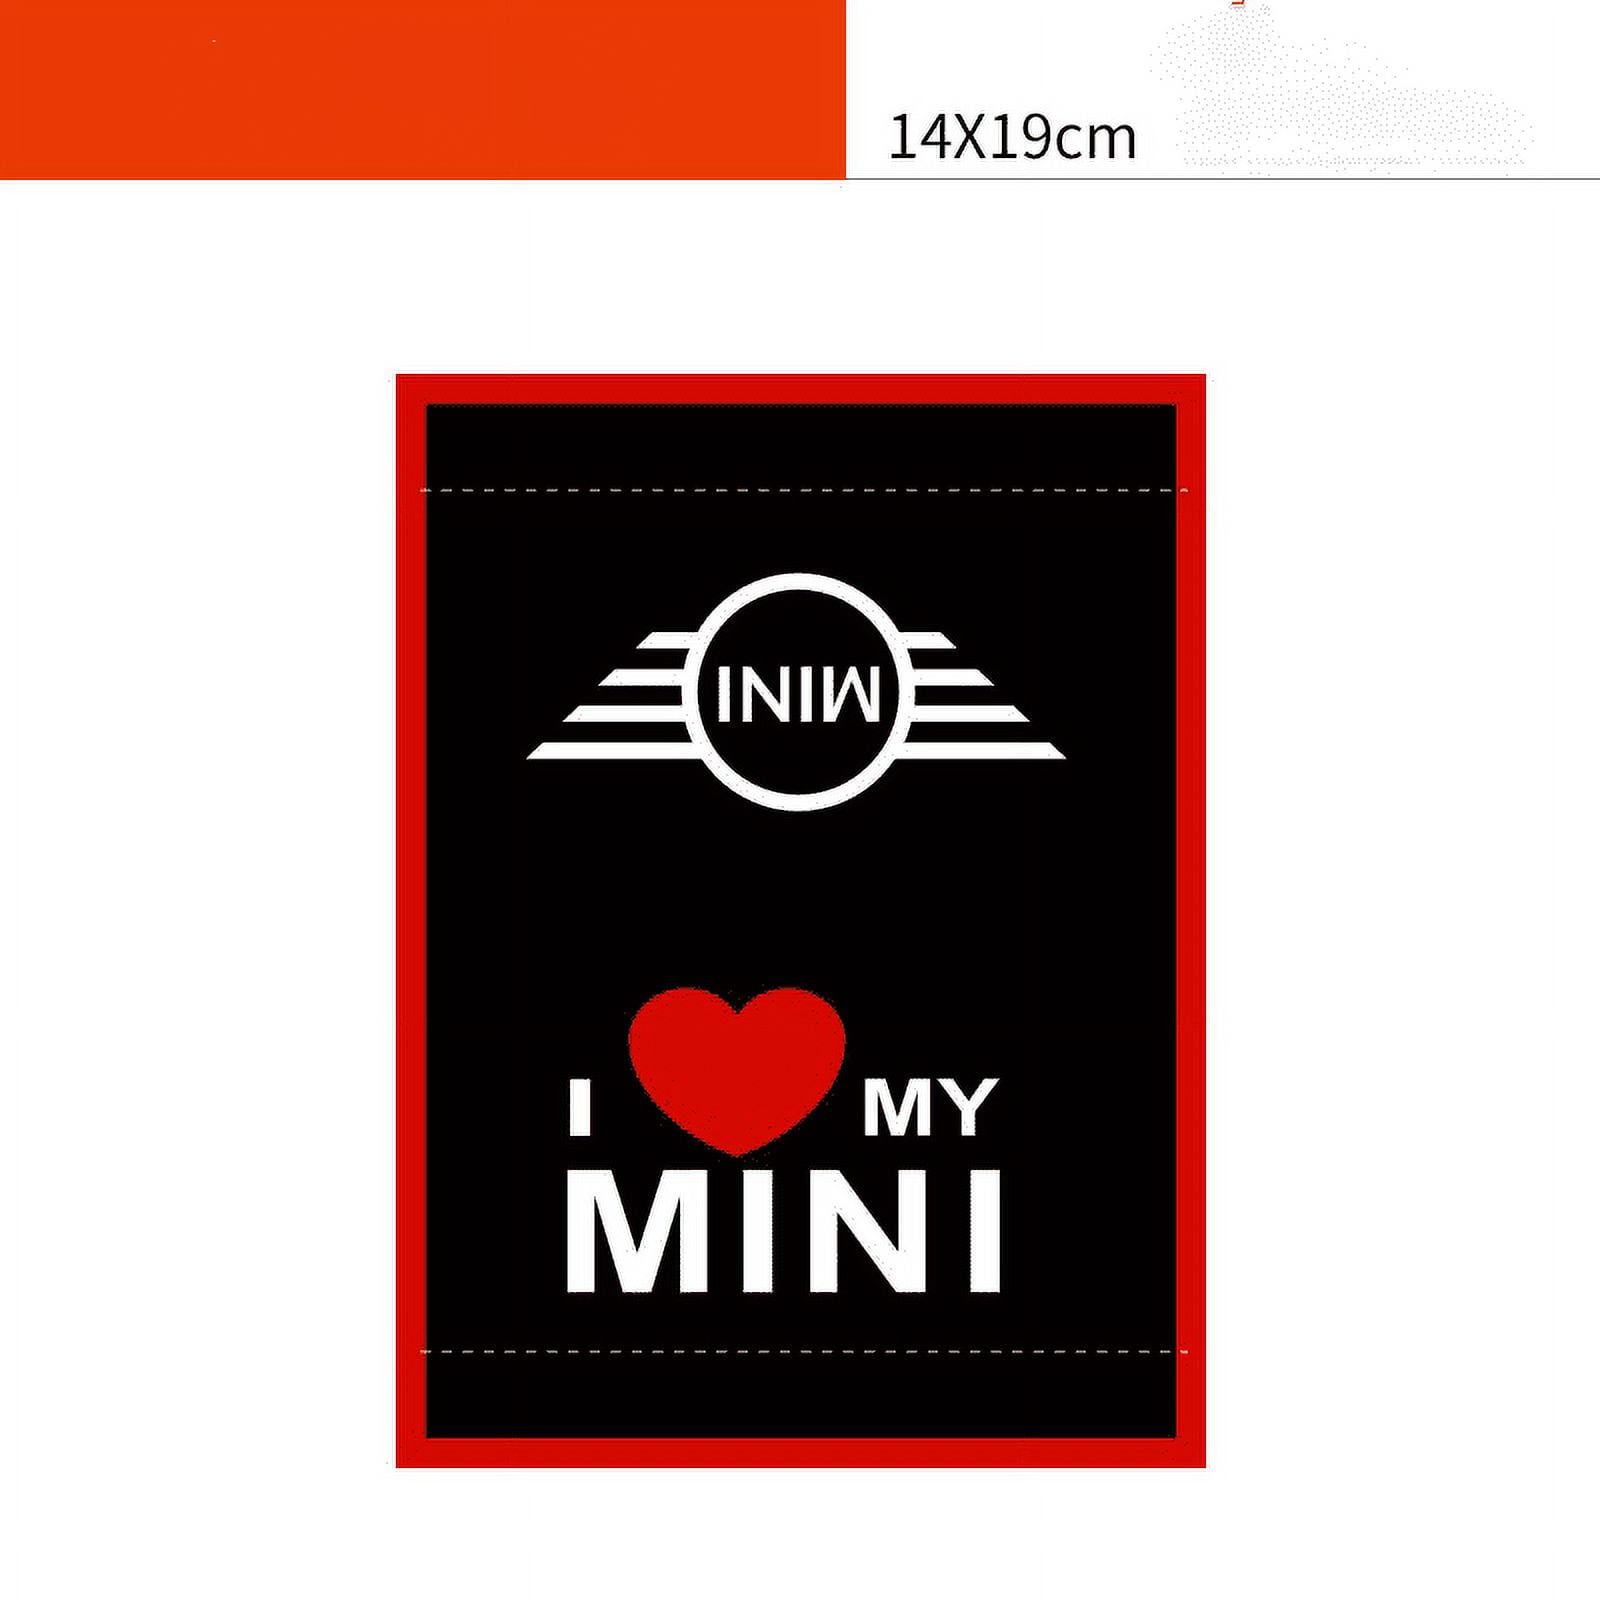 Love Mini - Mini Cooper - Sticker